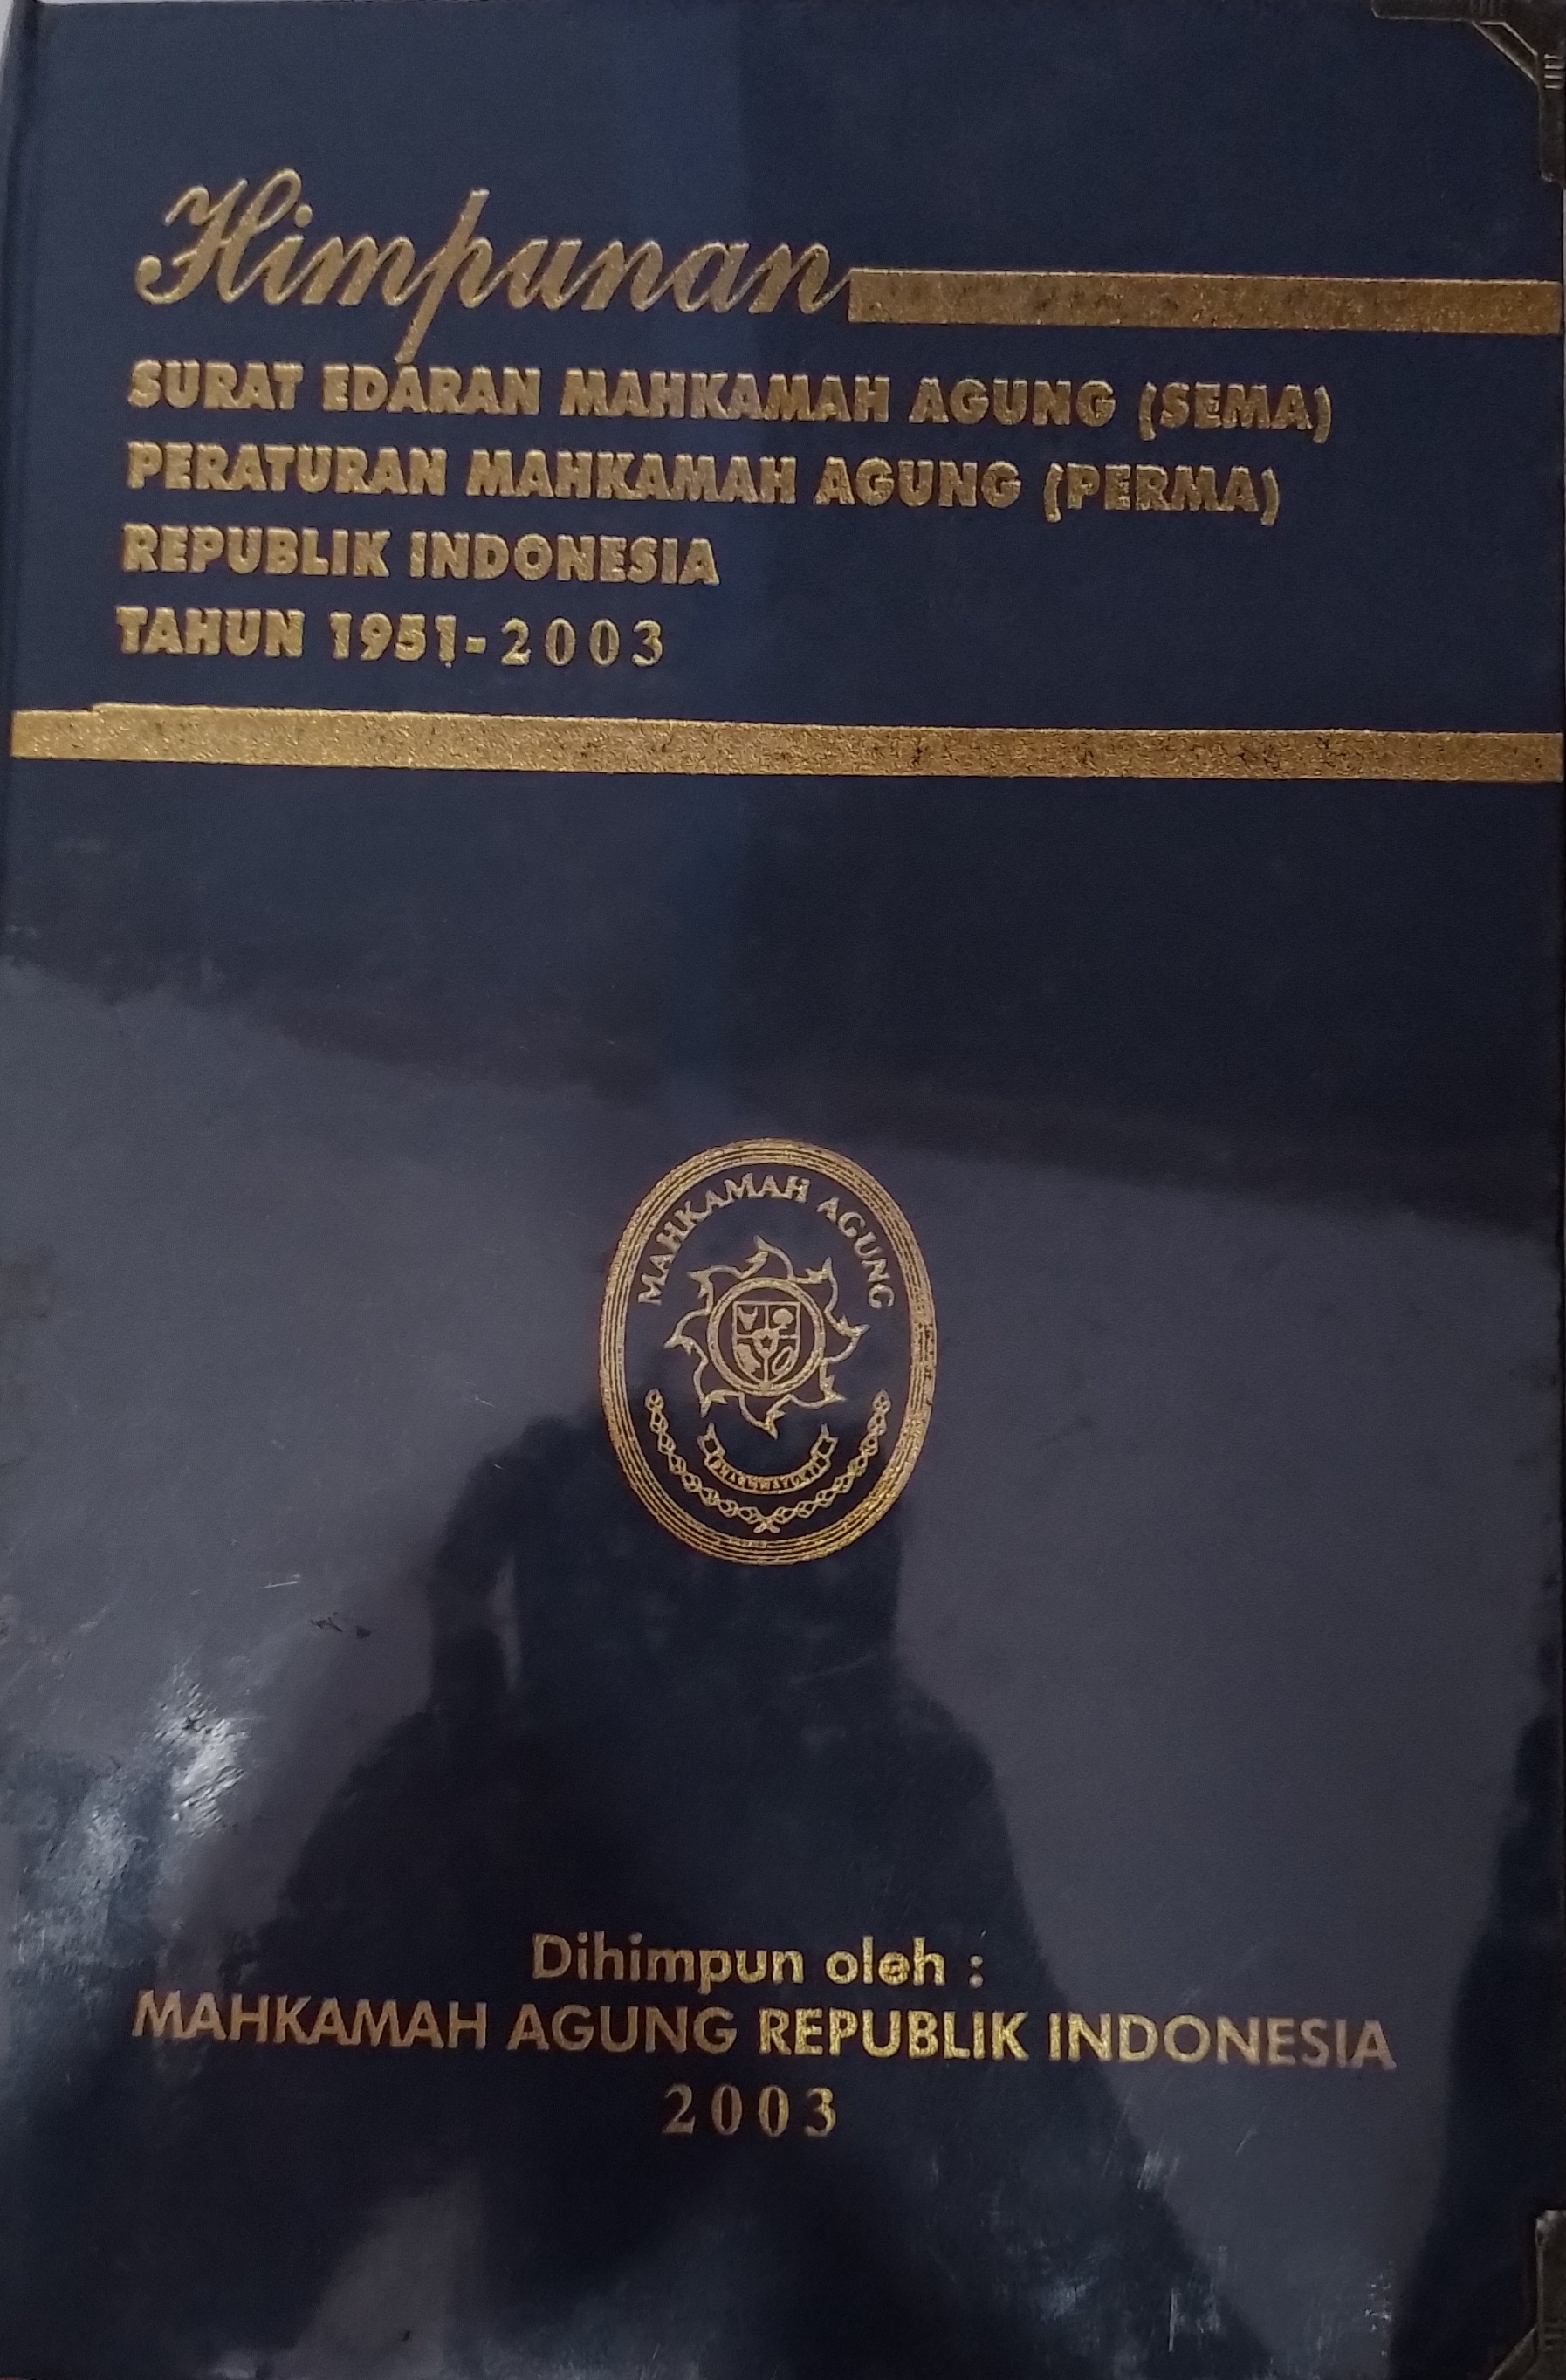 Himpunan Surat Edaran Mahkamah Agung (Sema) Peraturan Mahkamah Agung (Perma) Republik Indonesia Tahun 1951-2003